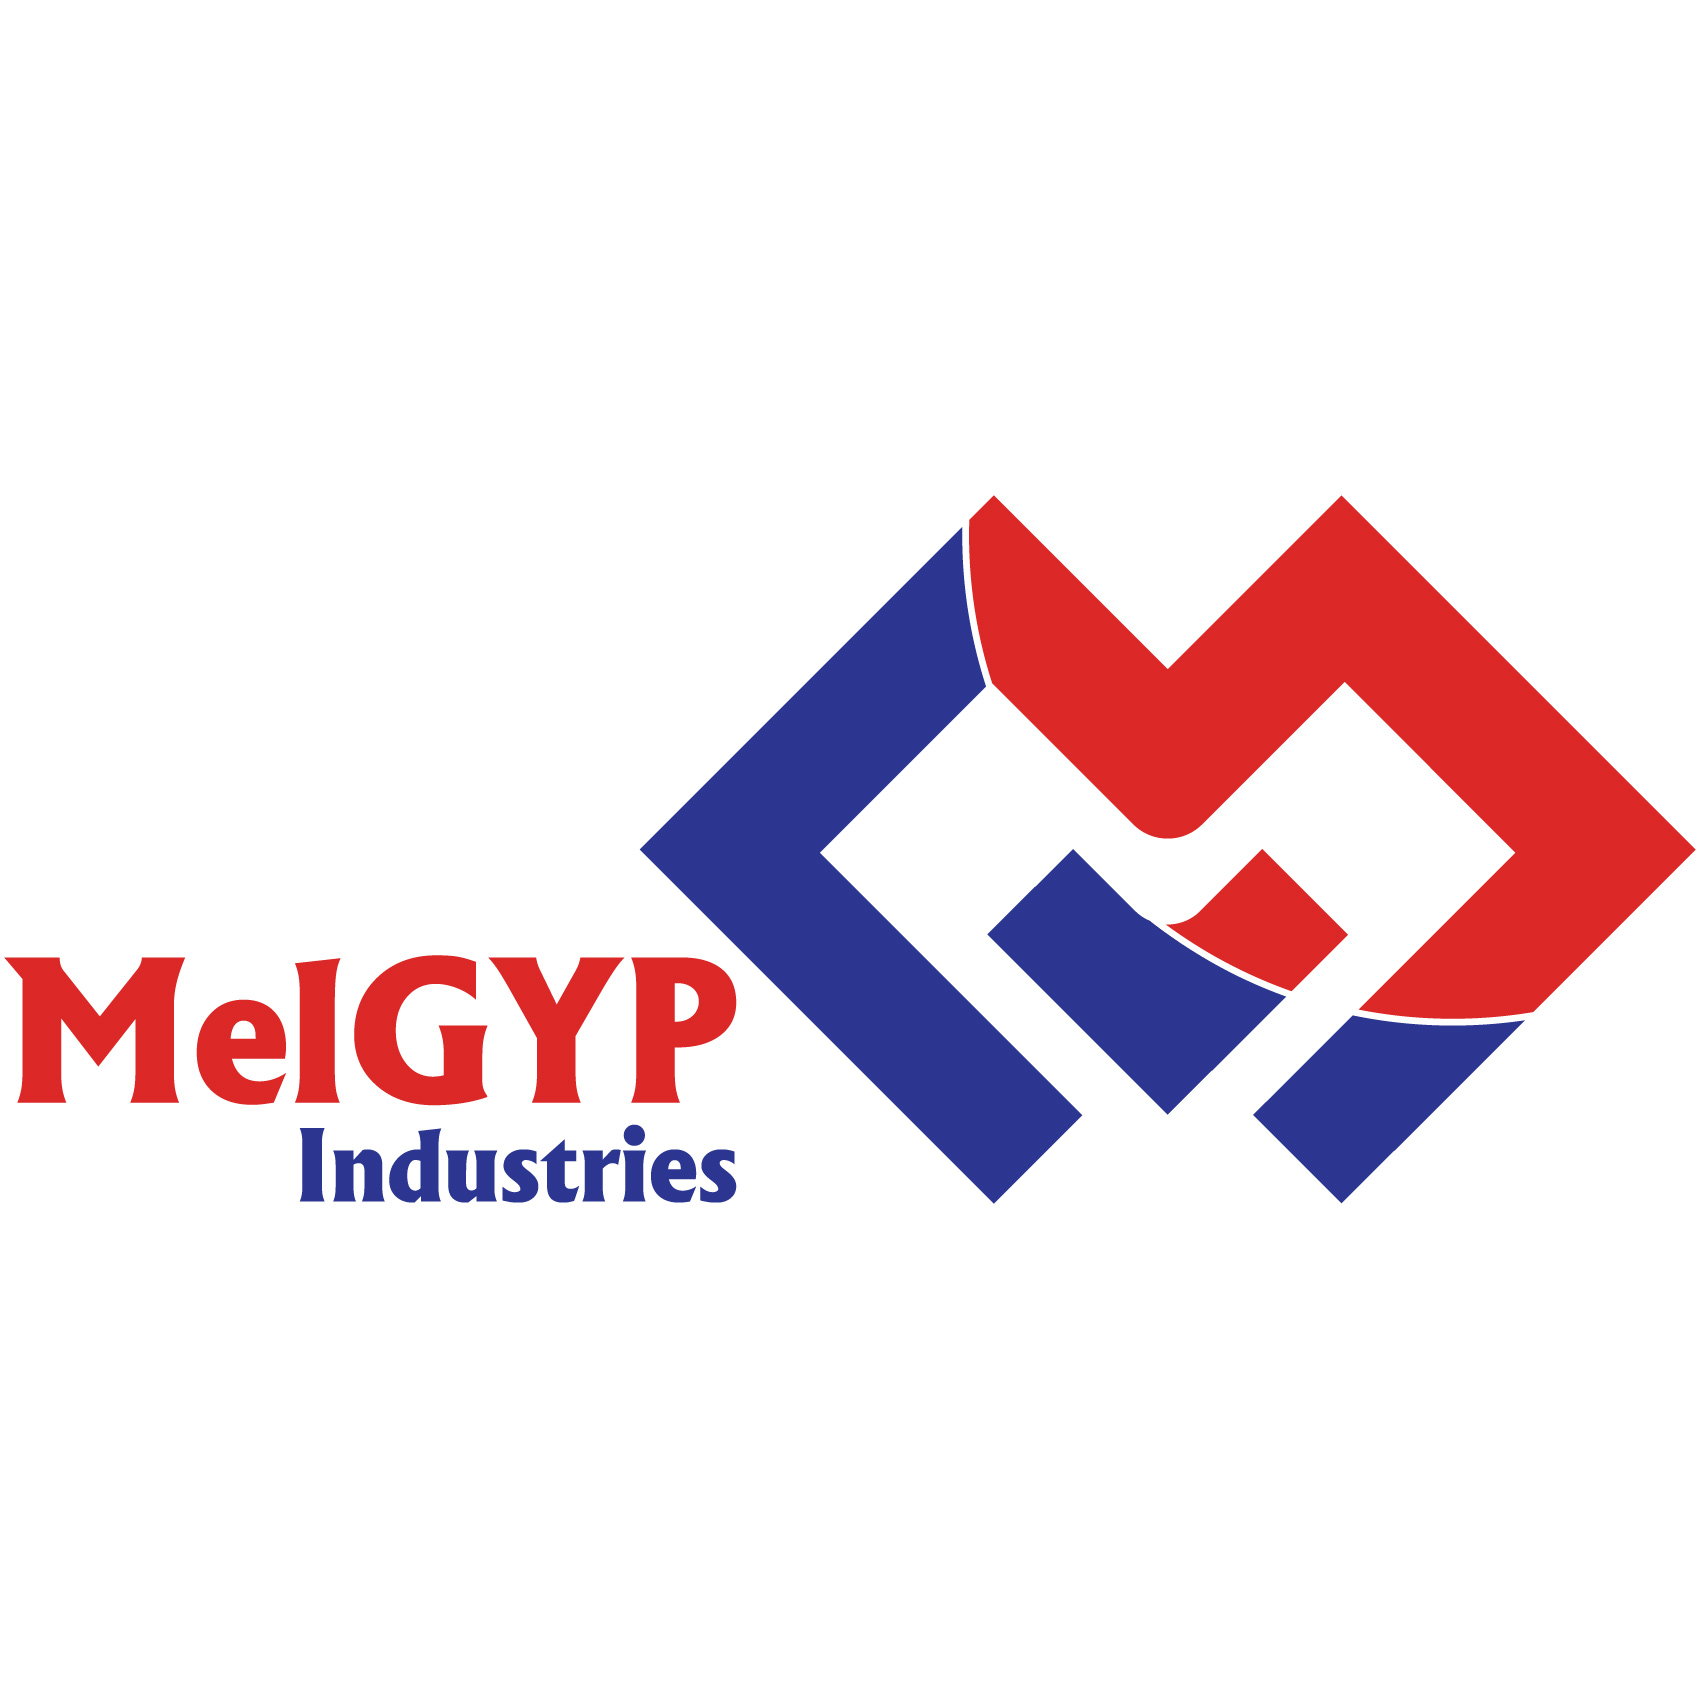 MelGYP Industries (PVT) Ltd